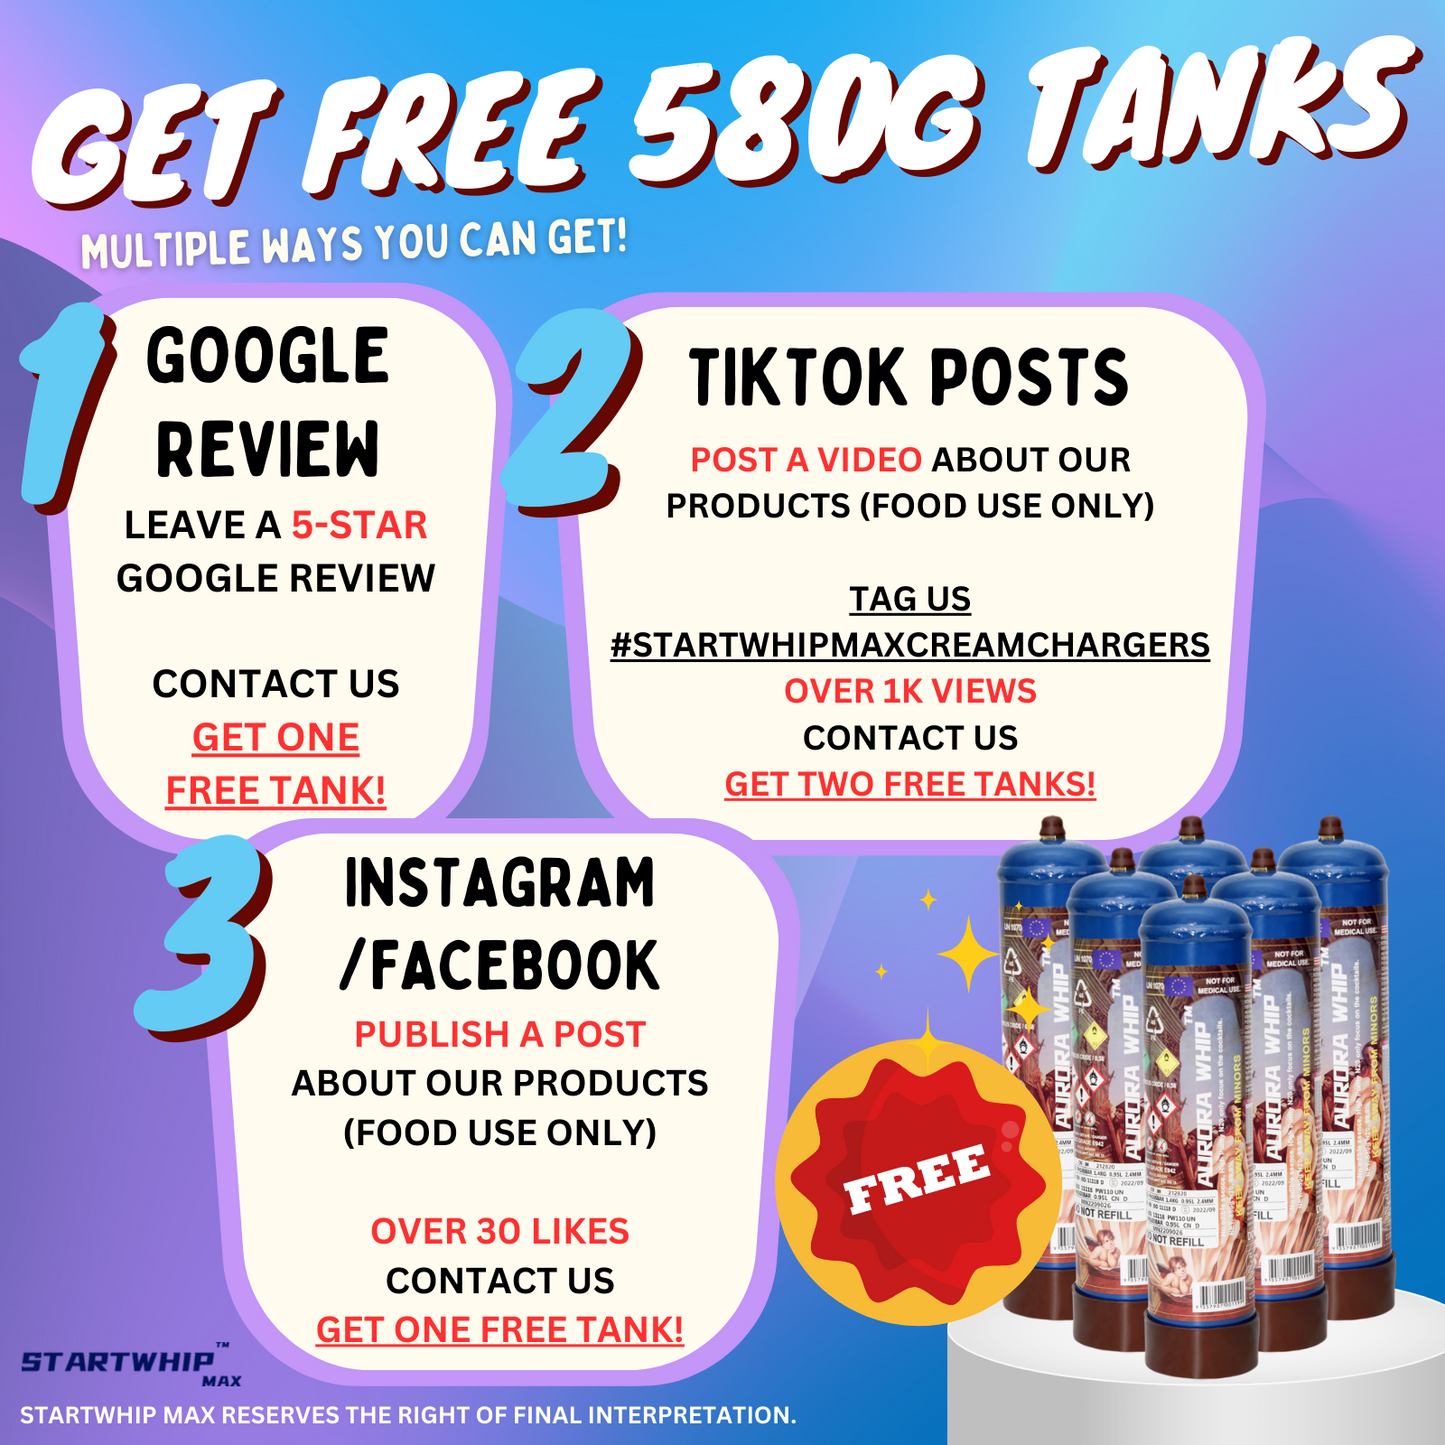 Free 580g tanks